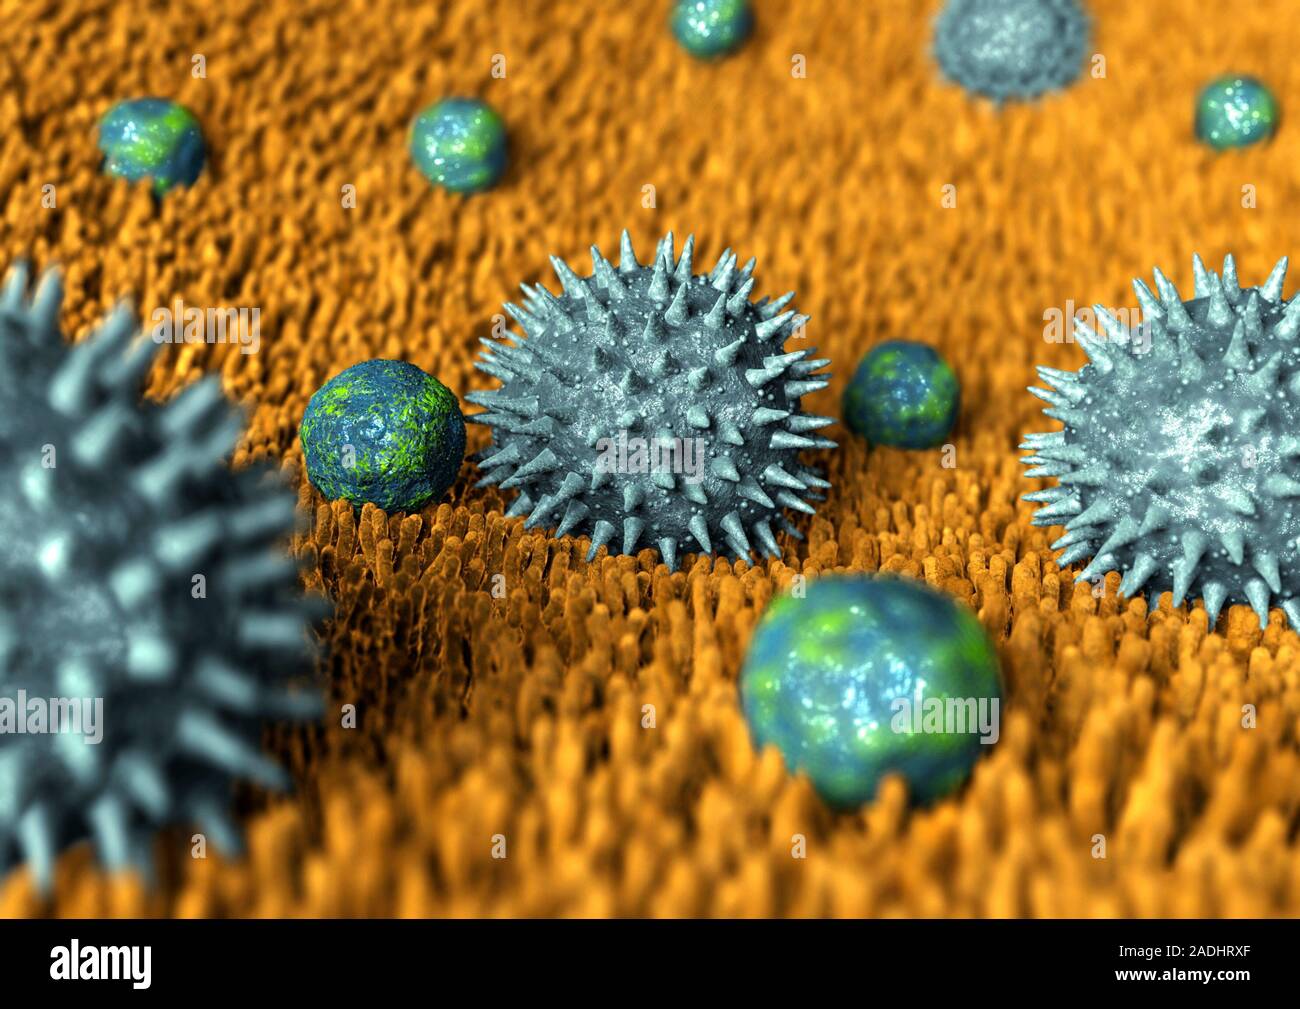 Бактерии вызывающие грипп. Вирус гриппа. Вирусы фото. Вирусы и бактерии. Вирус гриппа под микроскопом.